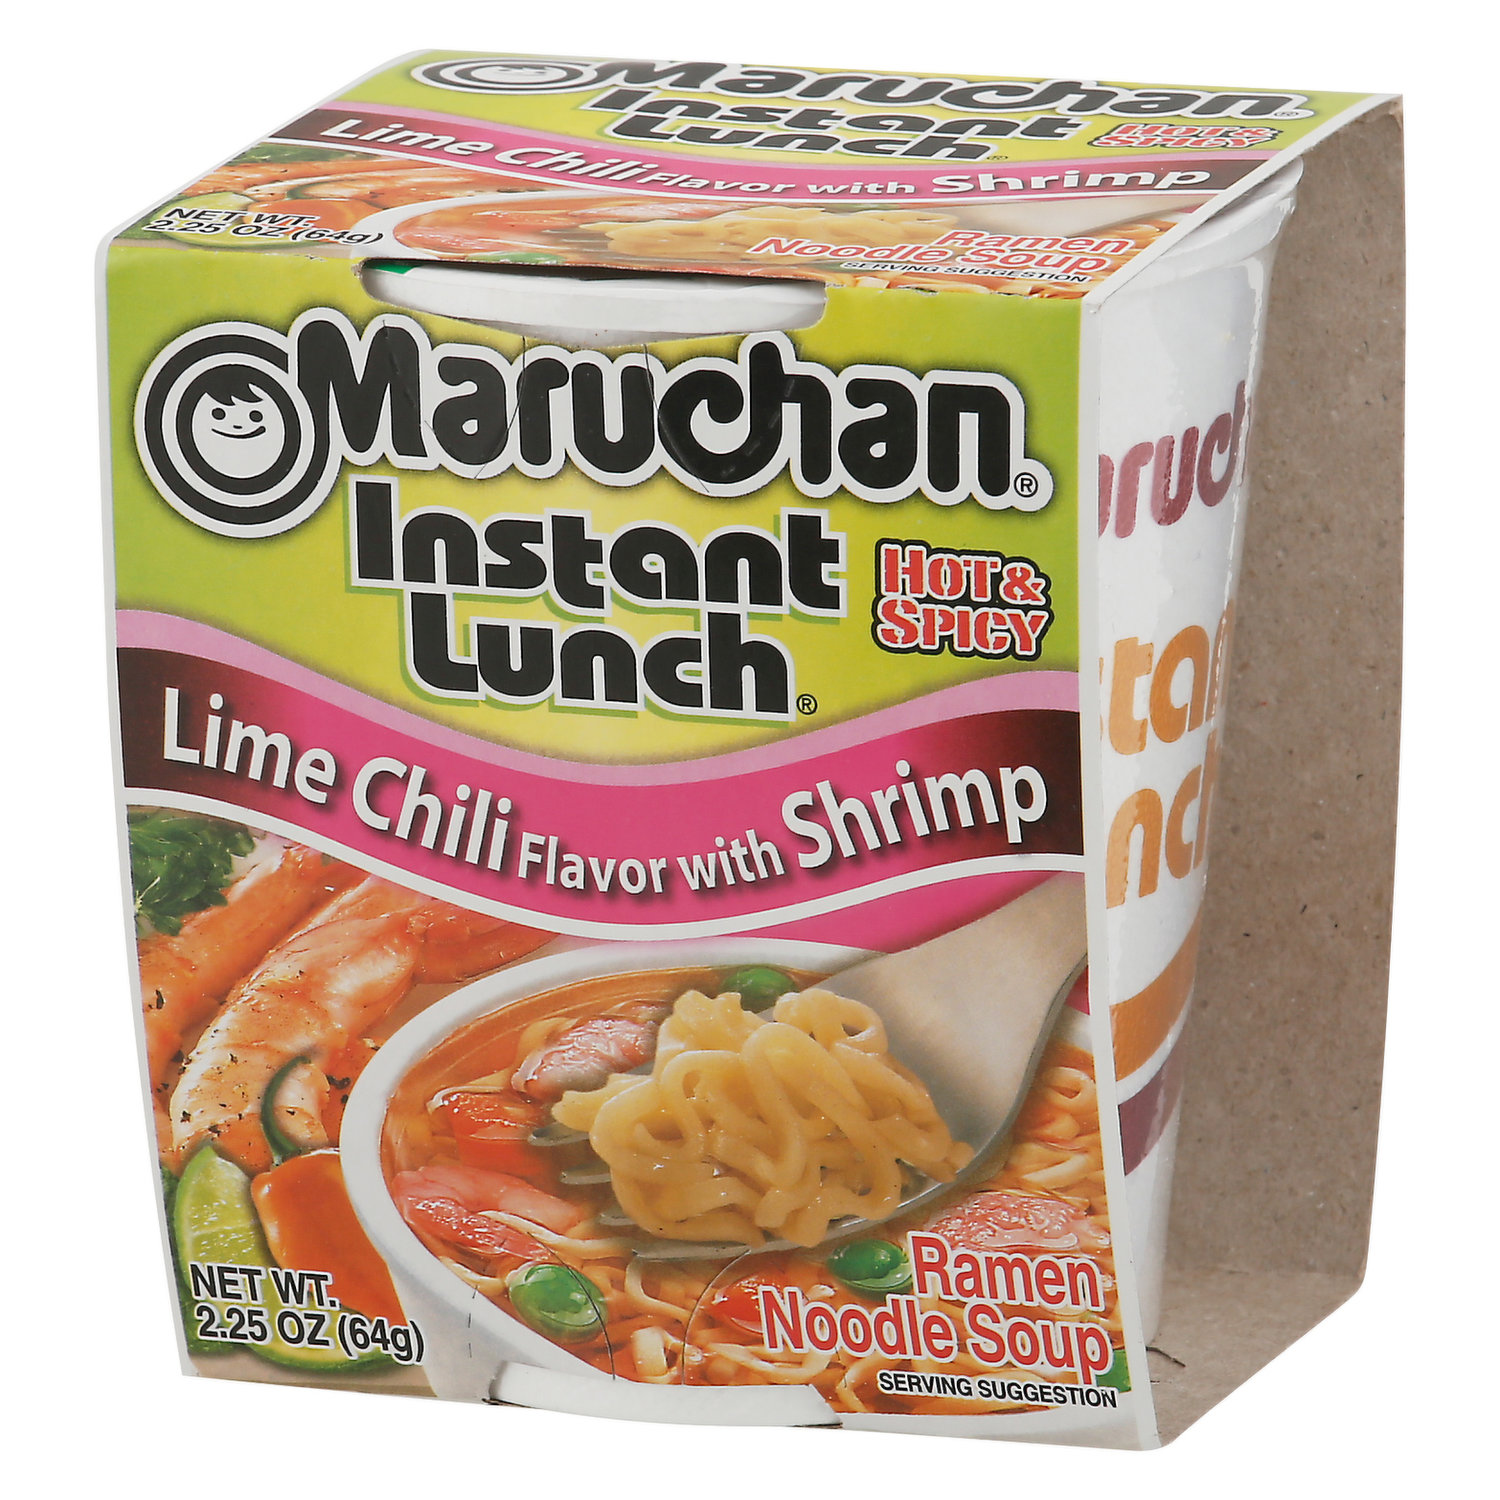 Maruchan® Lime Chili Shrimp Ramen Noodle Soup, 3 oz - Ralphs